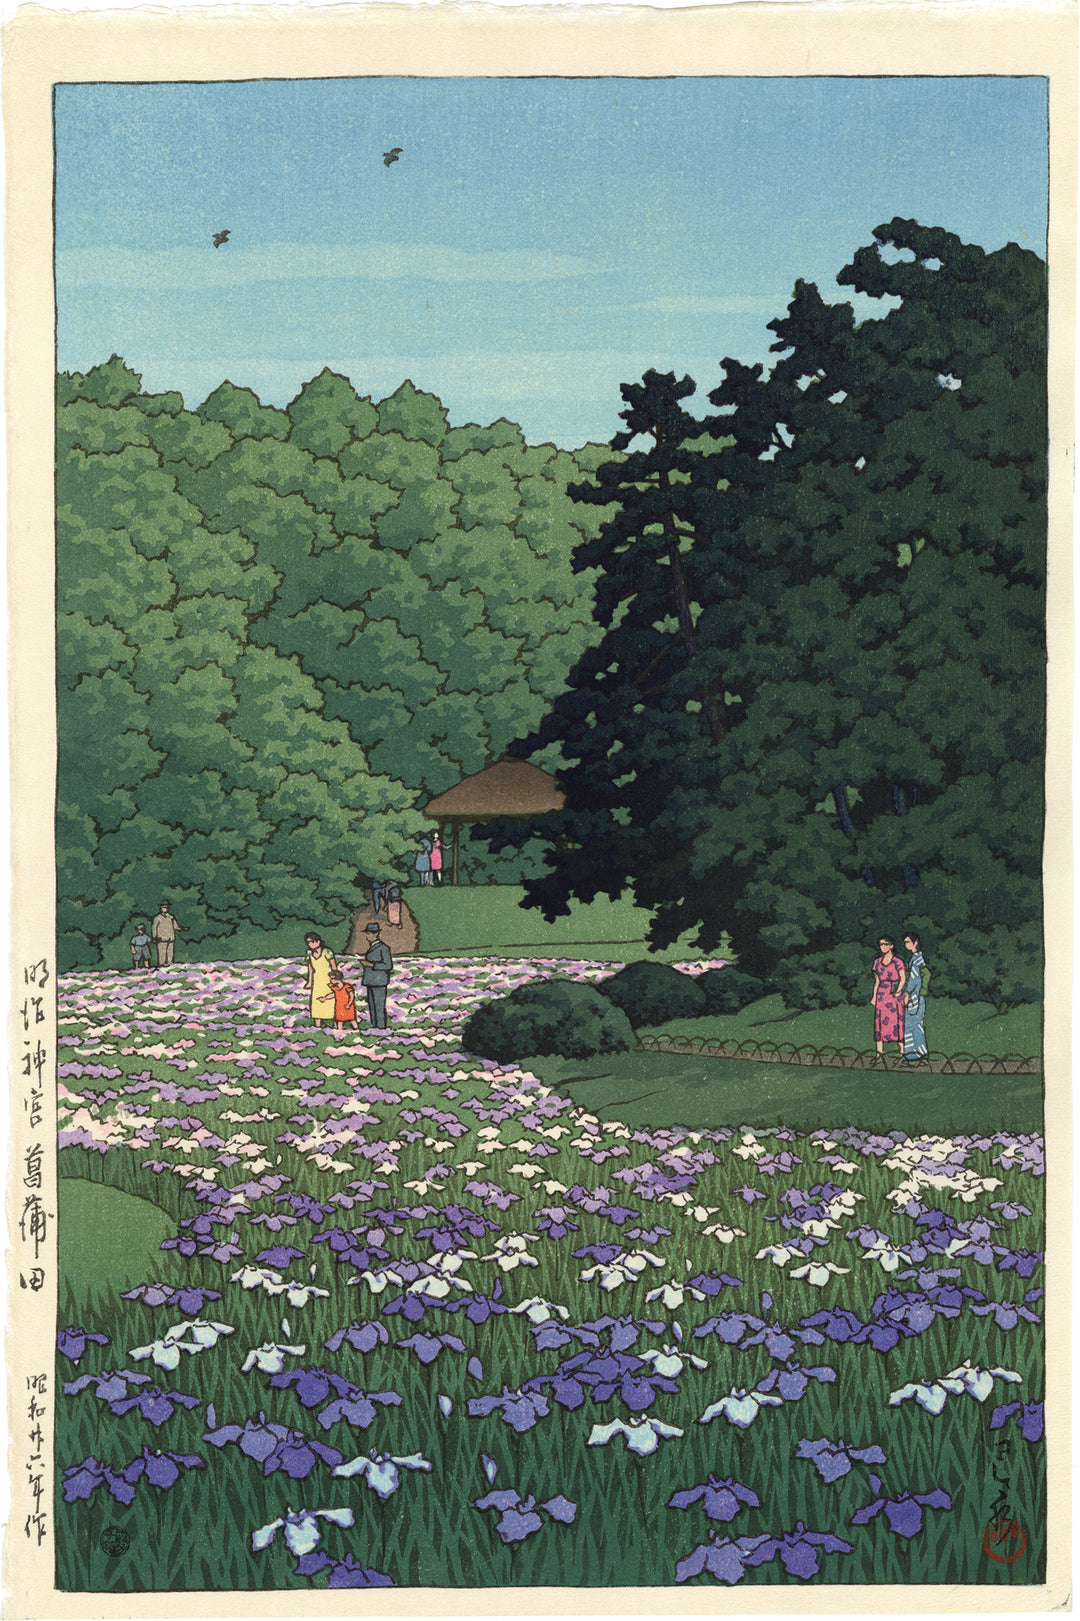 Сад Шобу, храм Мейдзі, Токіо by Hasui Kawase - 1951 - 38.8 x 25.8 см 